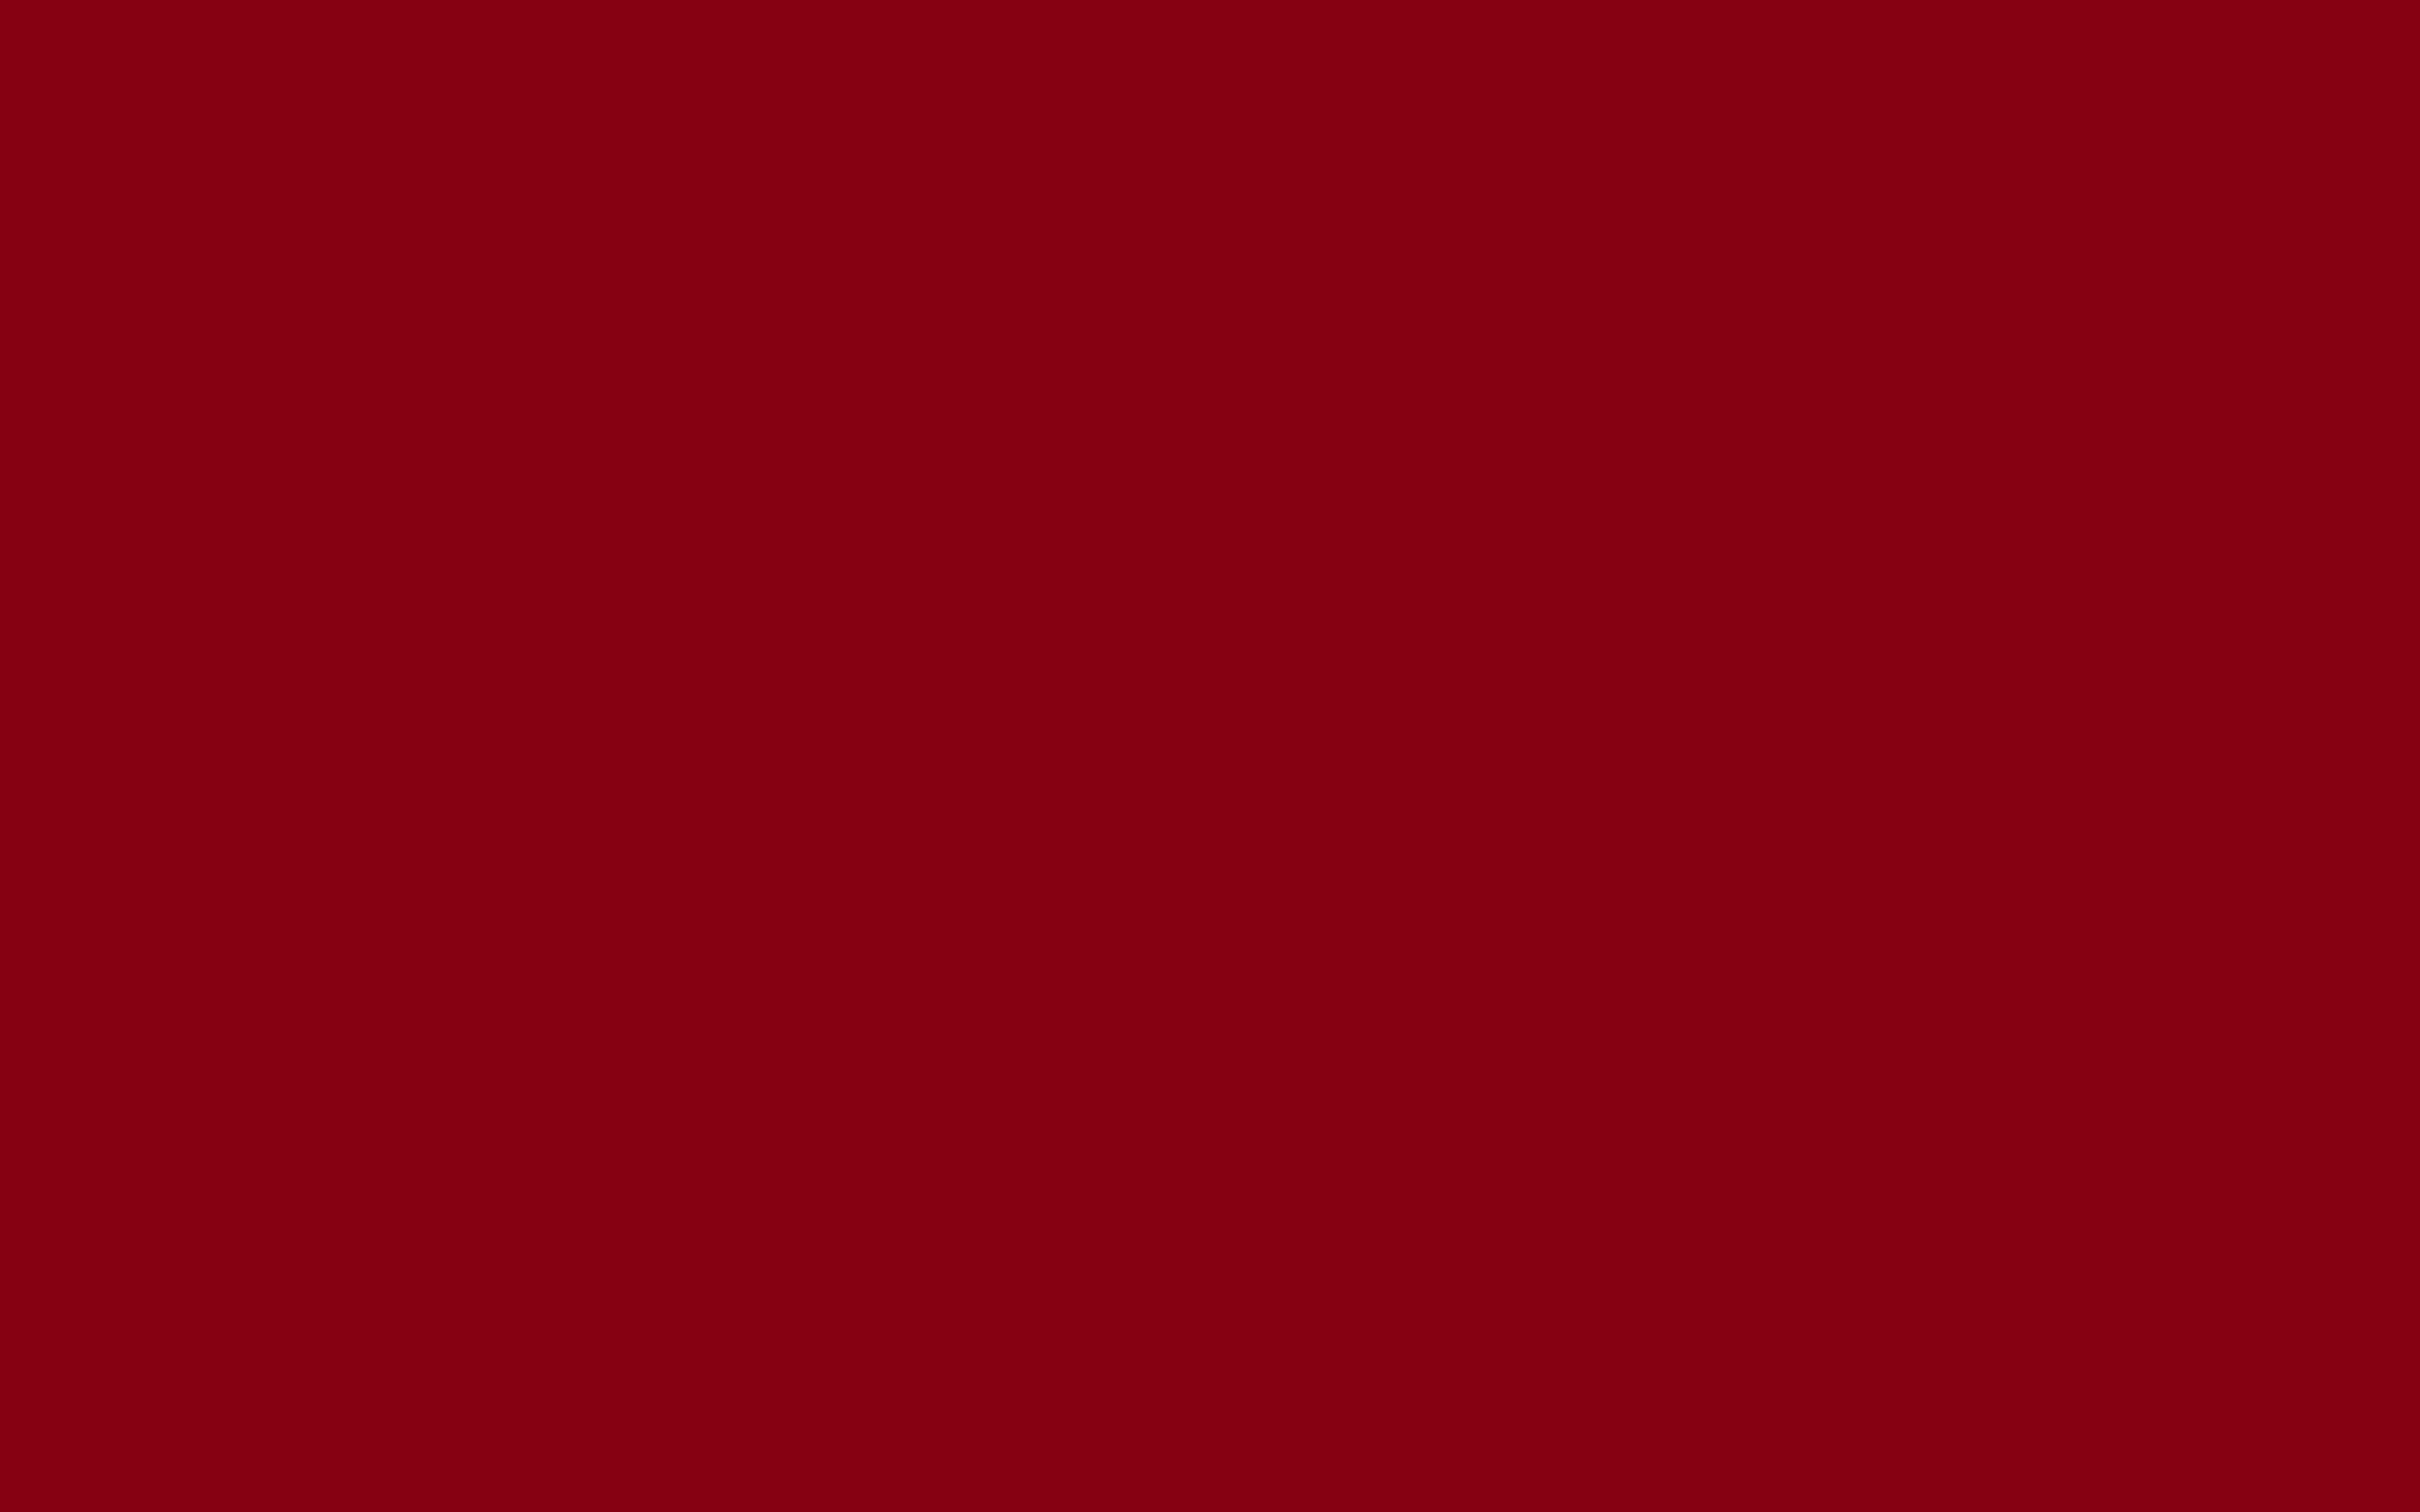 Solid Red Color Background Devil